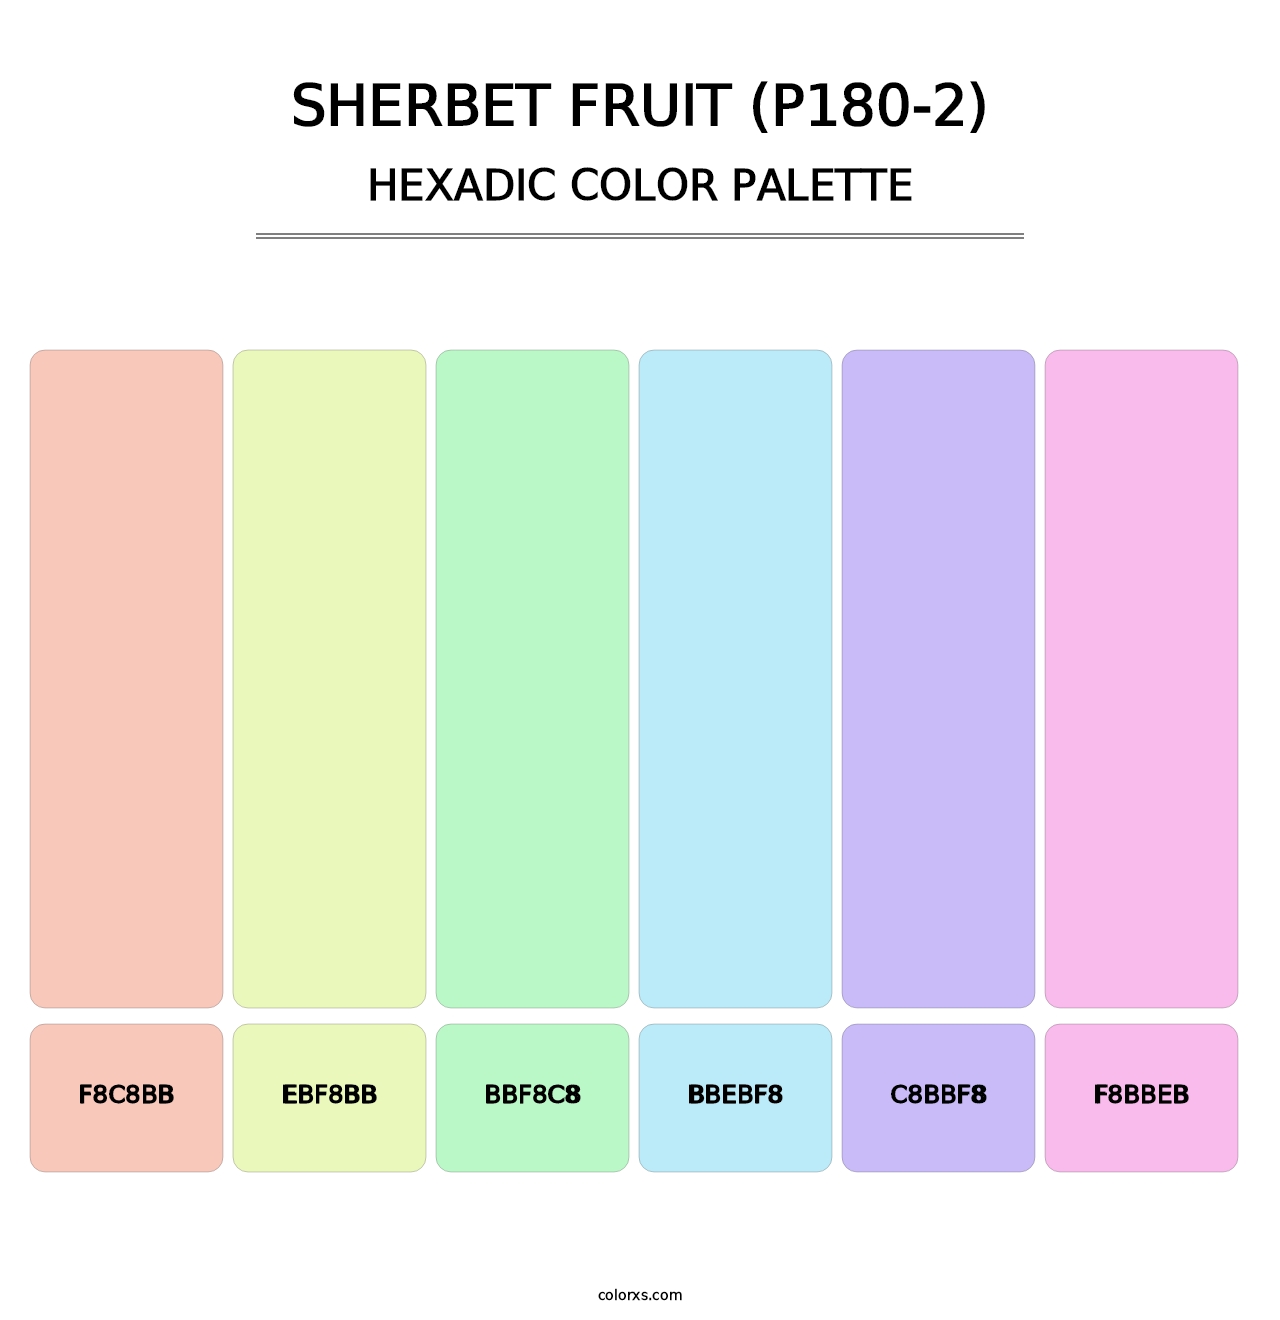 Sherbet Fruit (P180-2) - Hexadic Color Palette